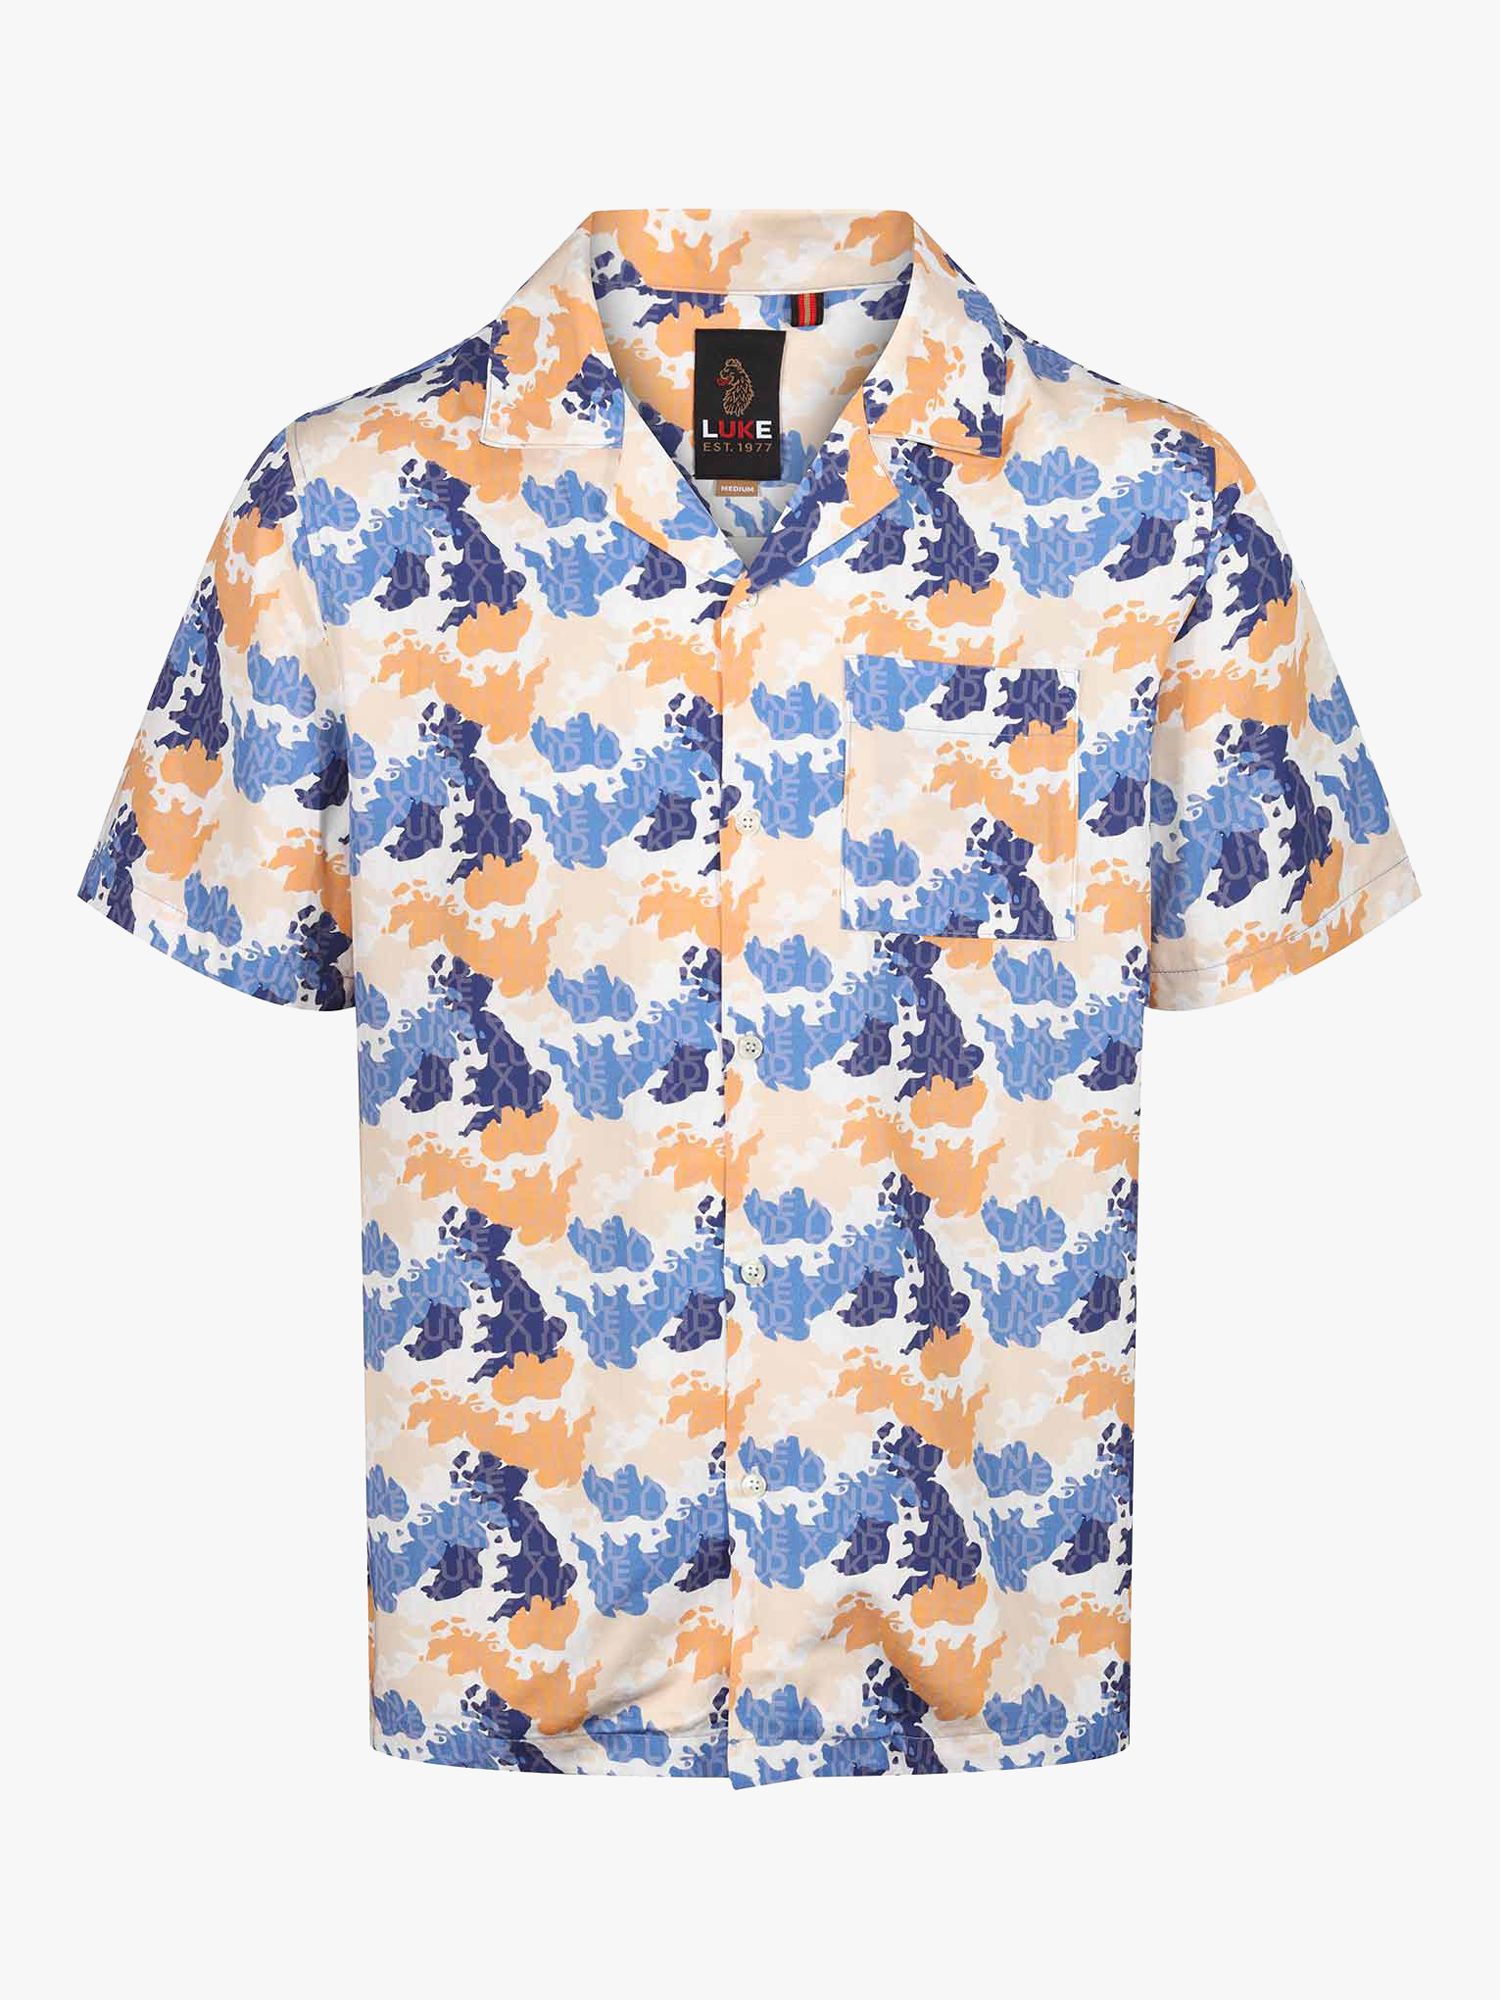 LUKE 1977 Mamba Camouflage Print Shirt, Apricot/Multi, S